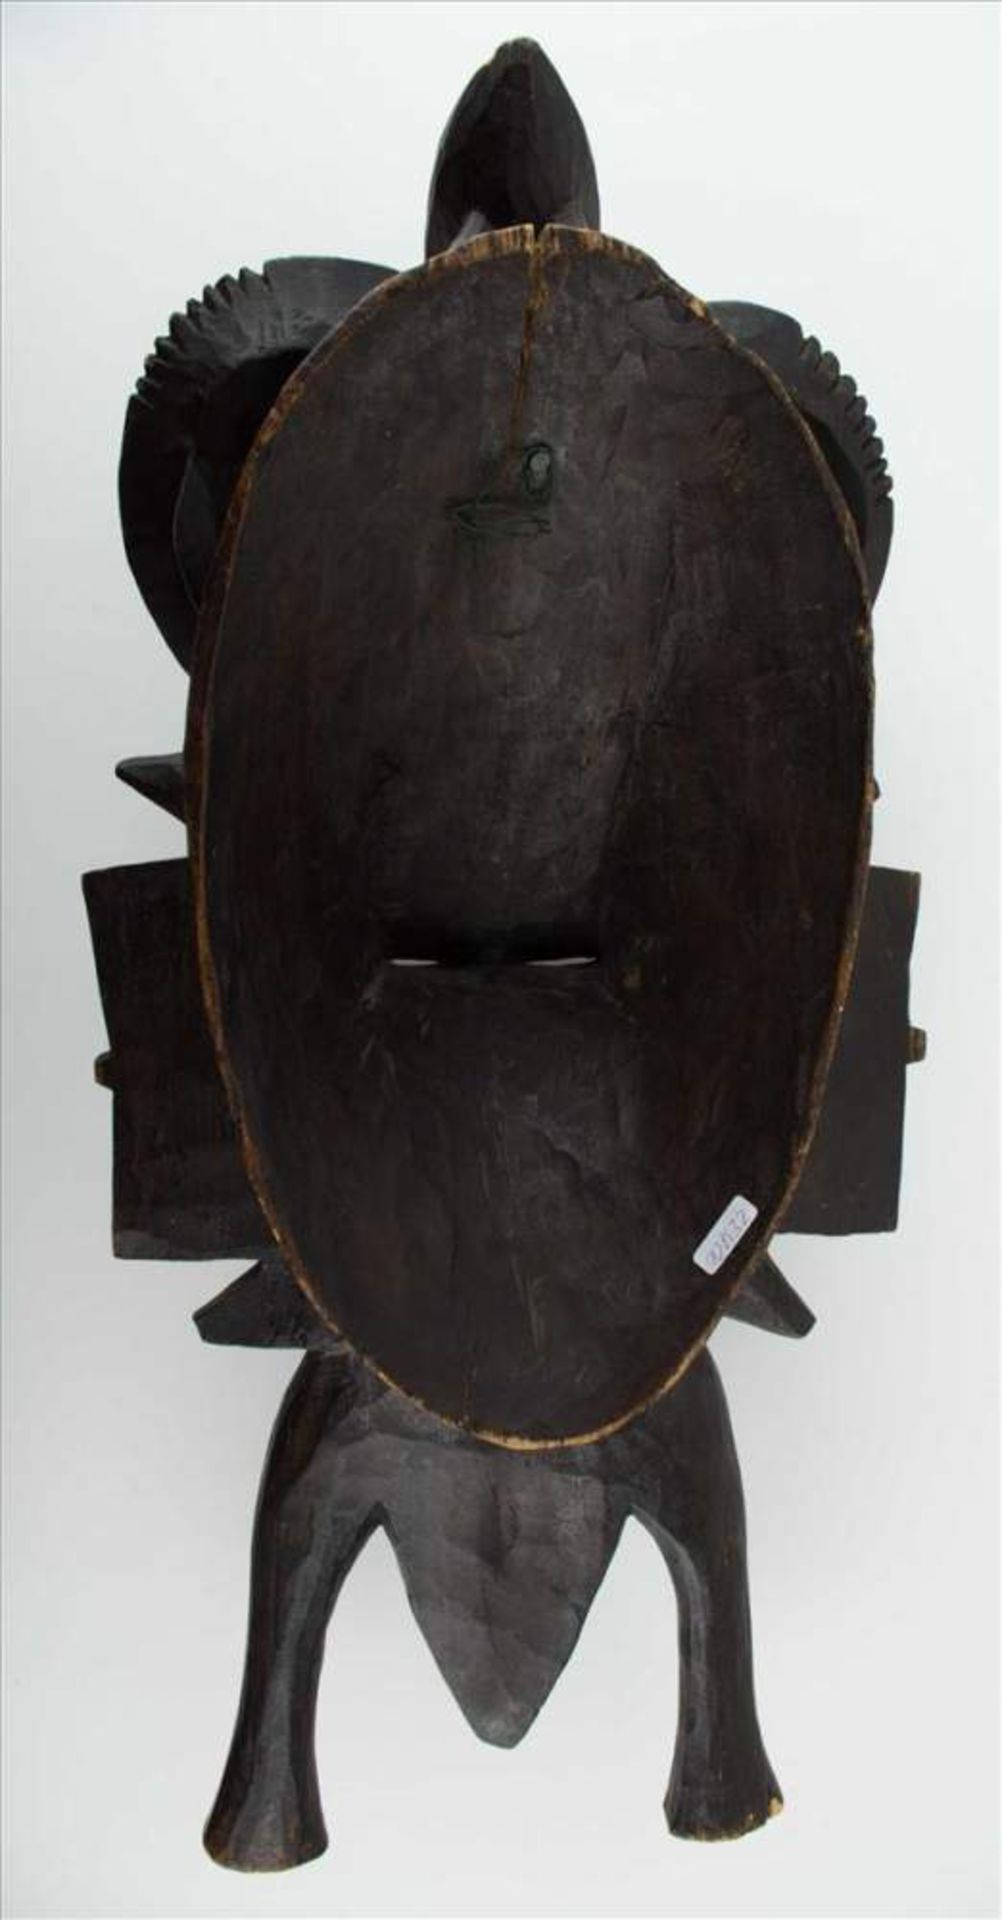 Afrikanische Senufo Maske Kolonialzeit / African Senufo mask, colonialism period Holz, beschnitzt, - Bild 3 aus 3